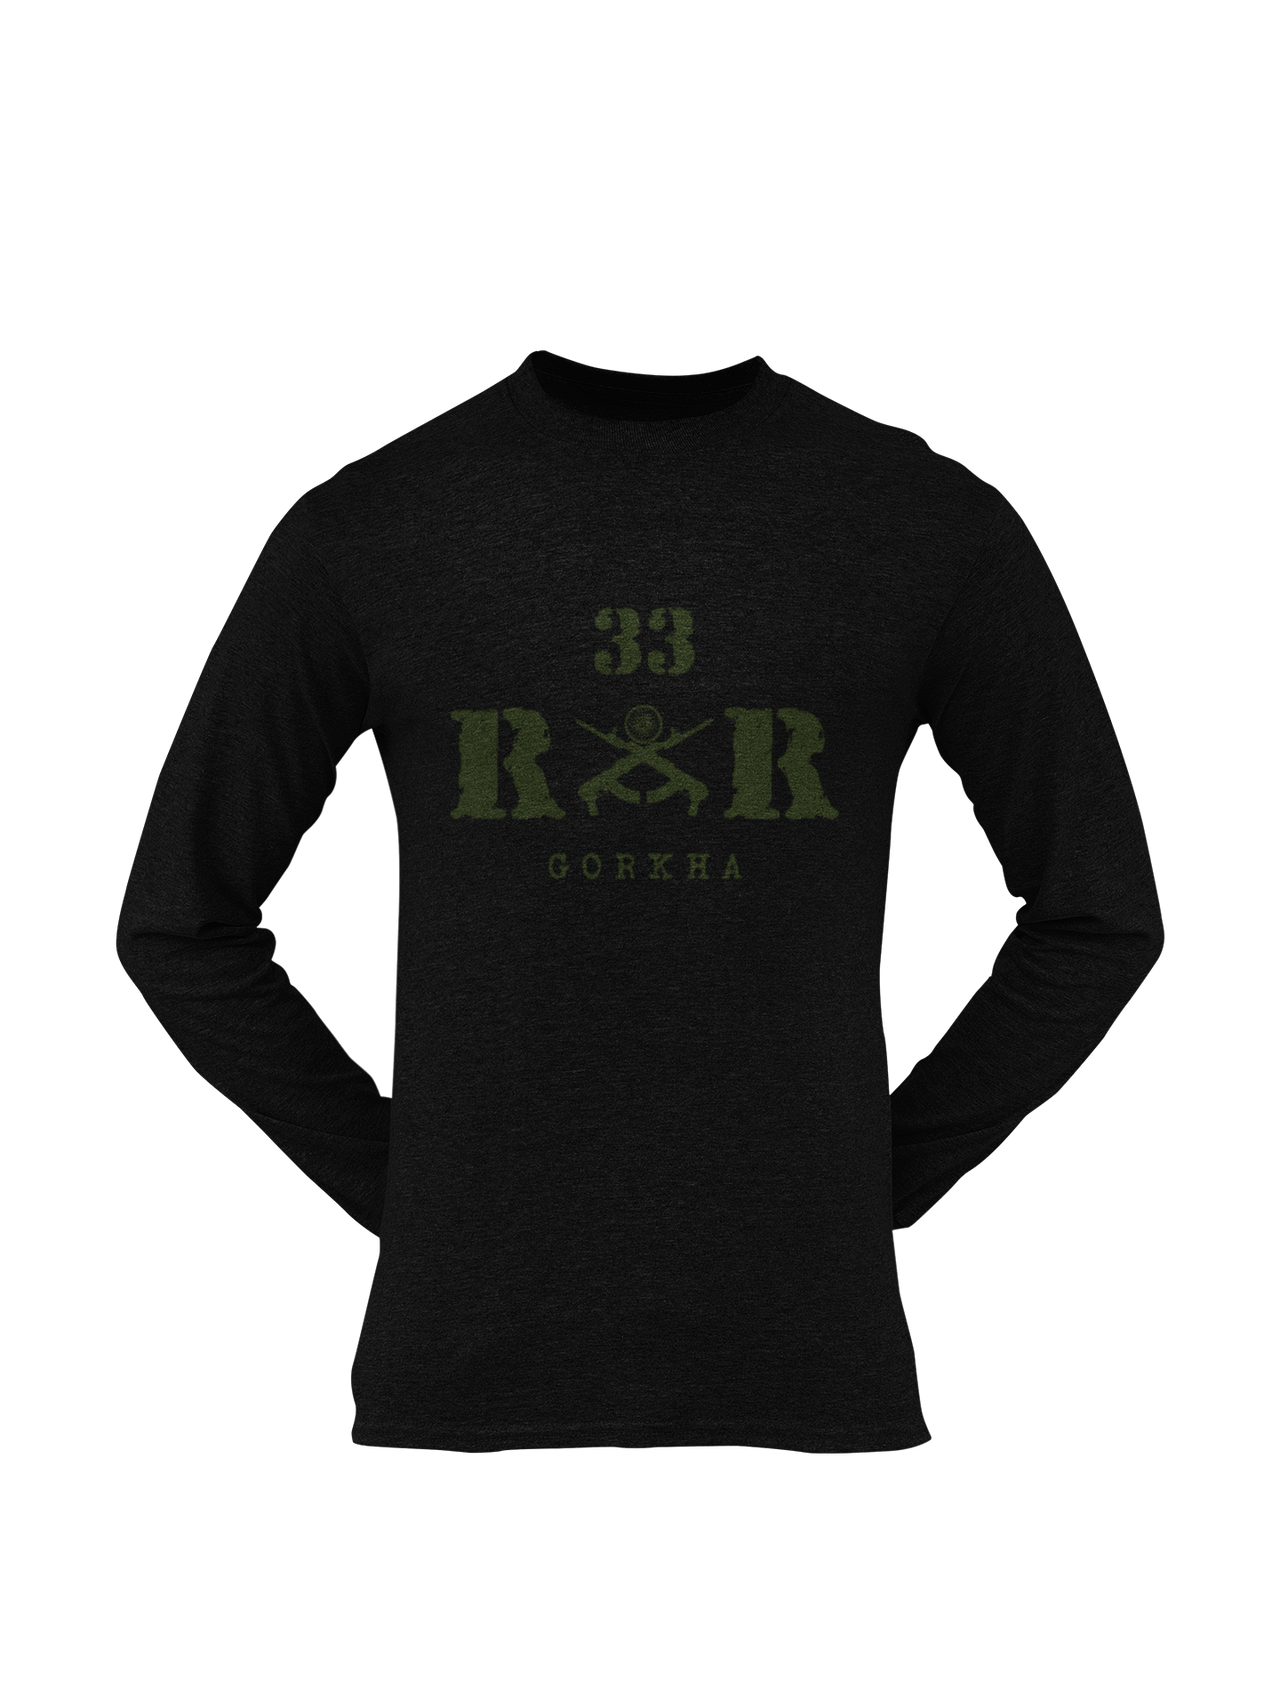 Rashtriya Rifles T-shirt - 33 RR Gorkha (Men)